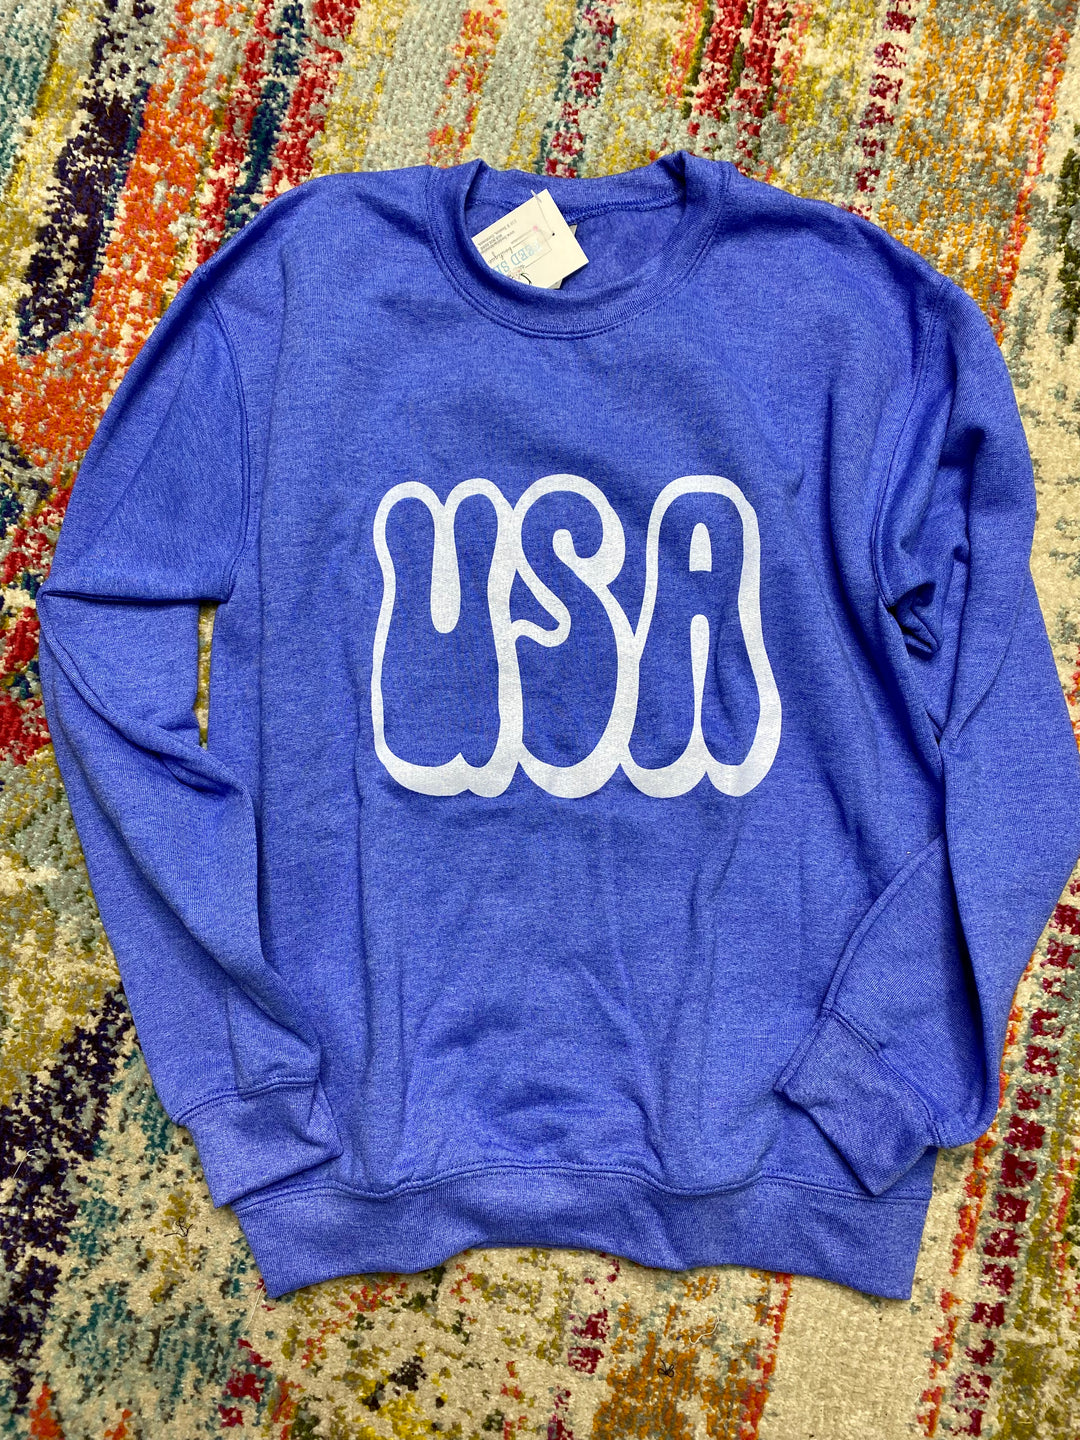 USA Retro Sweatshirt